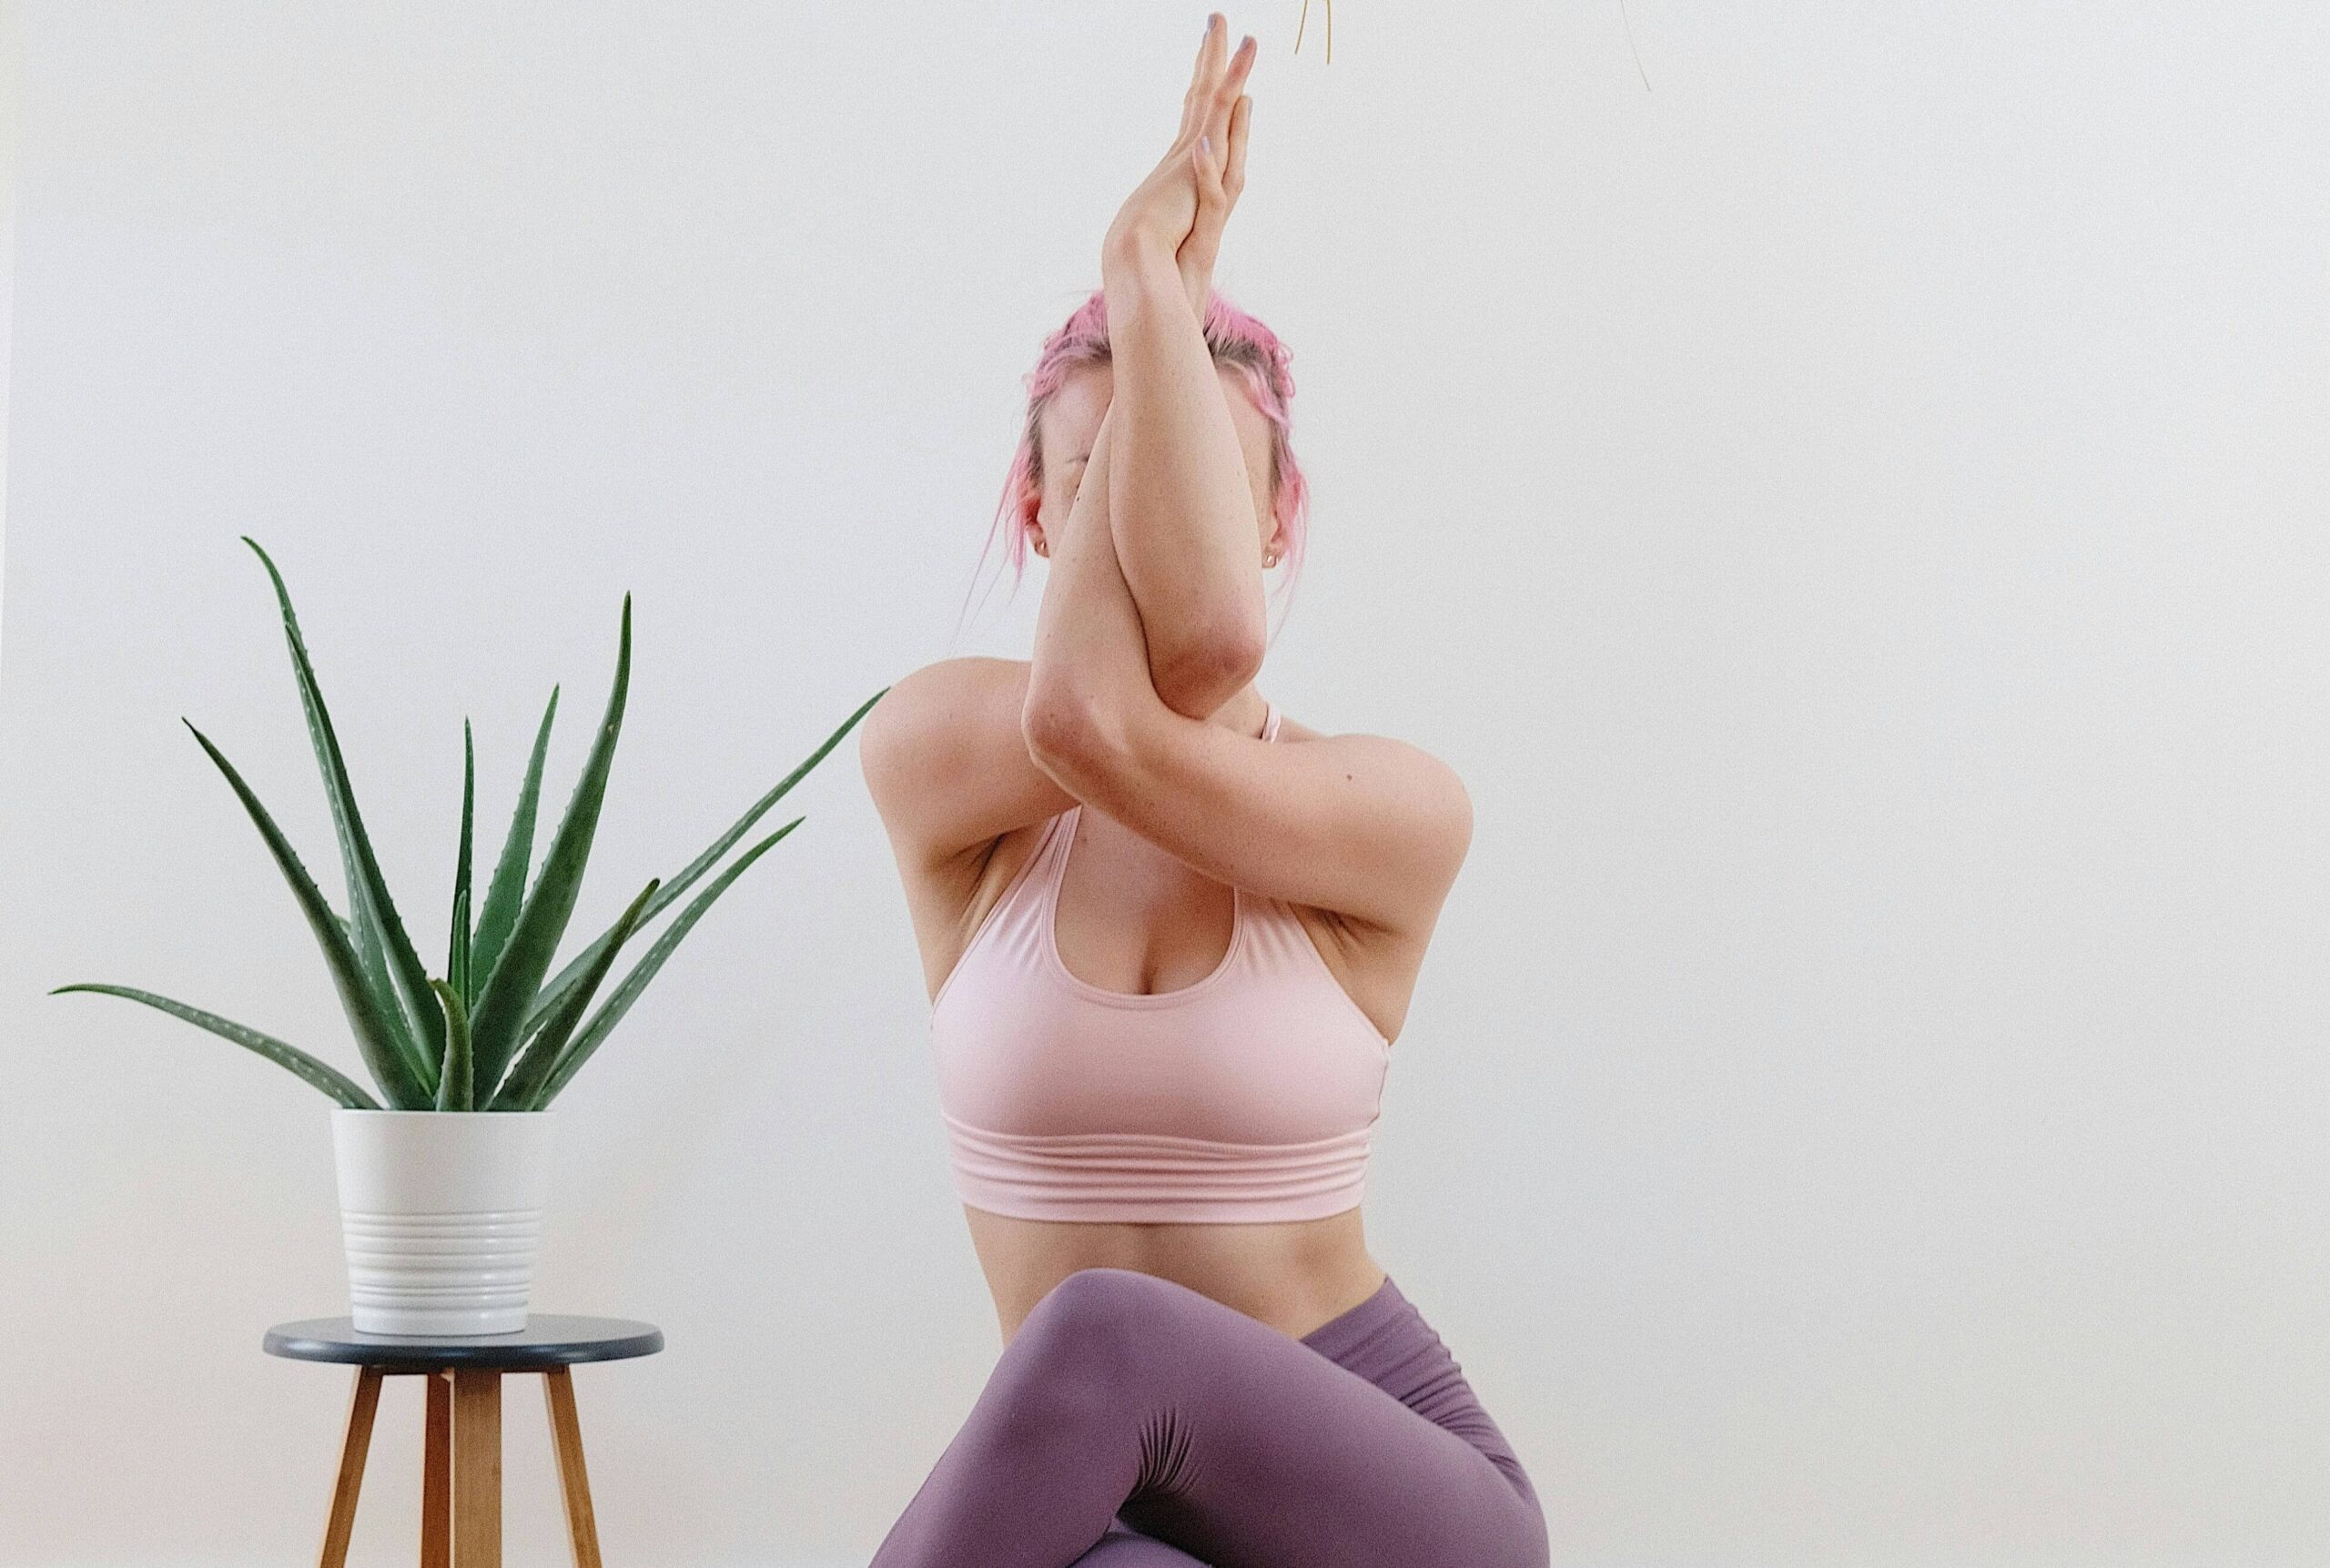 Woman demonstrating yoga poses